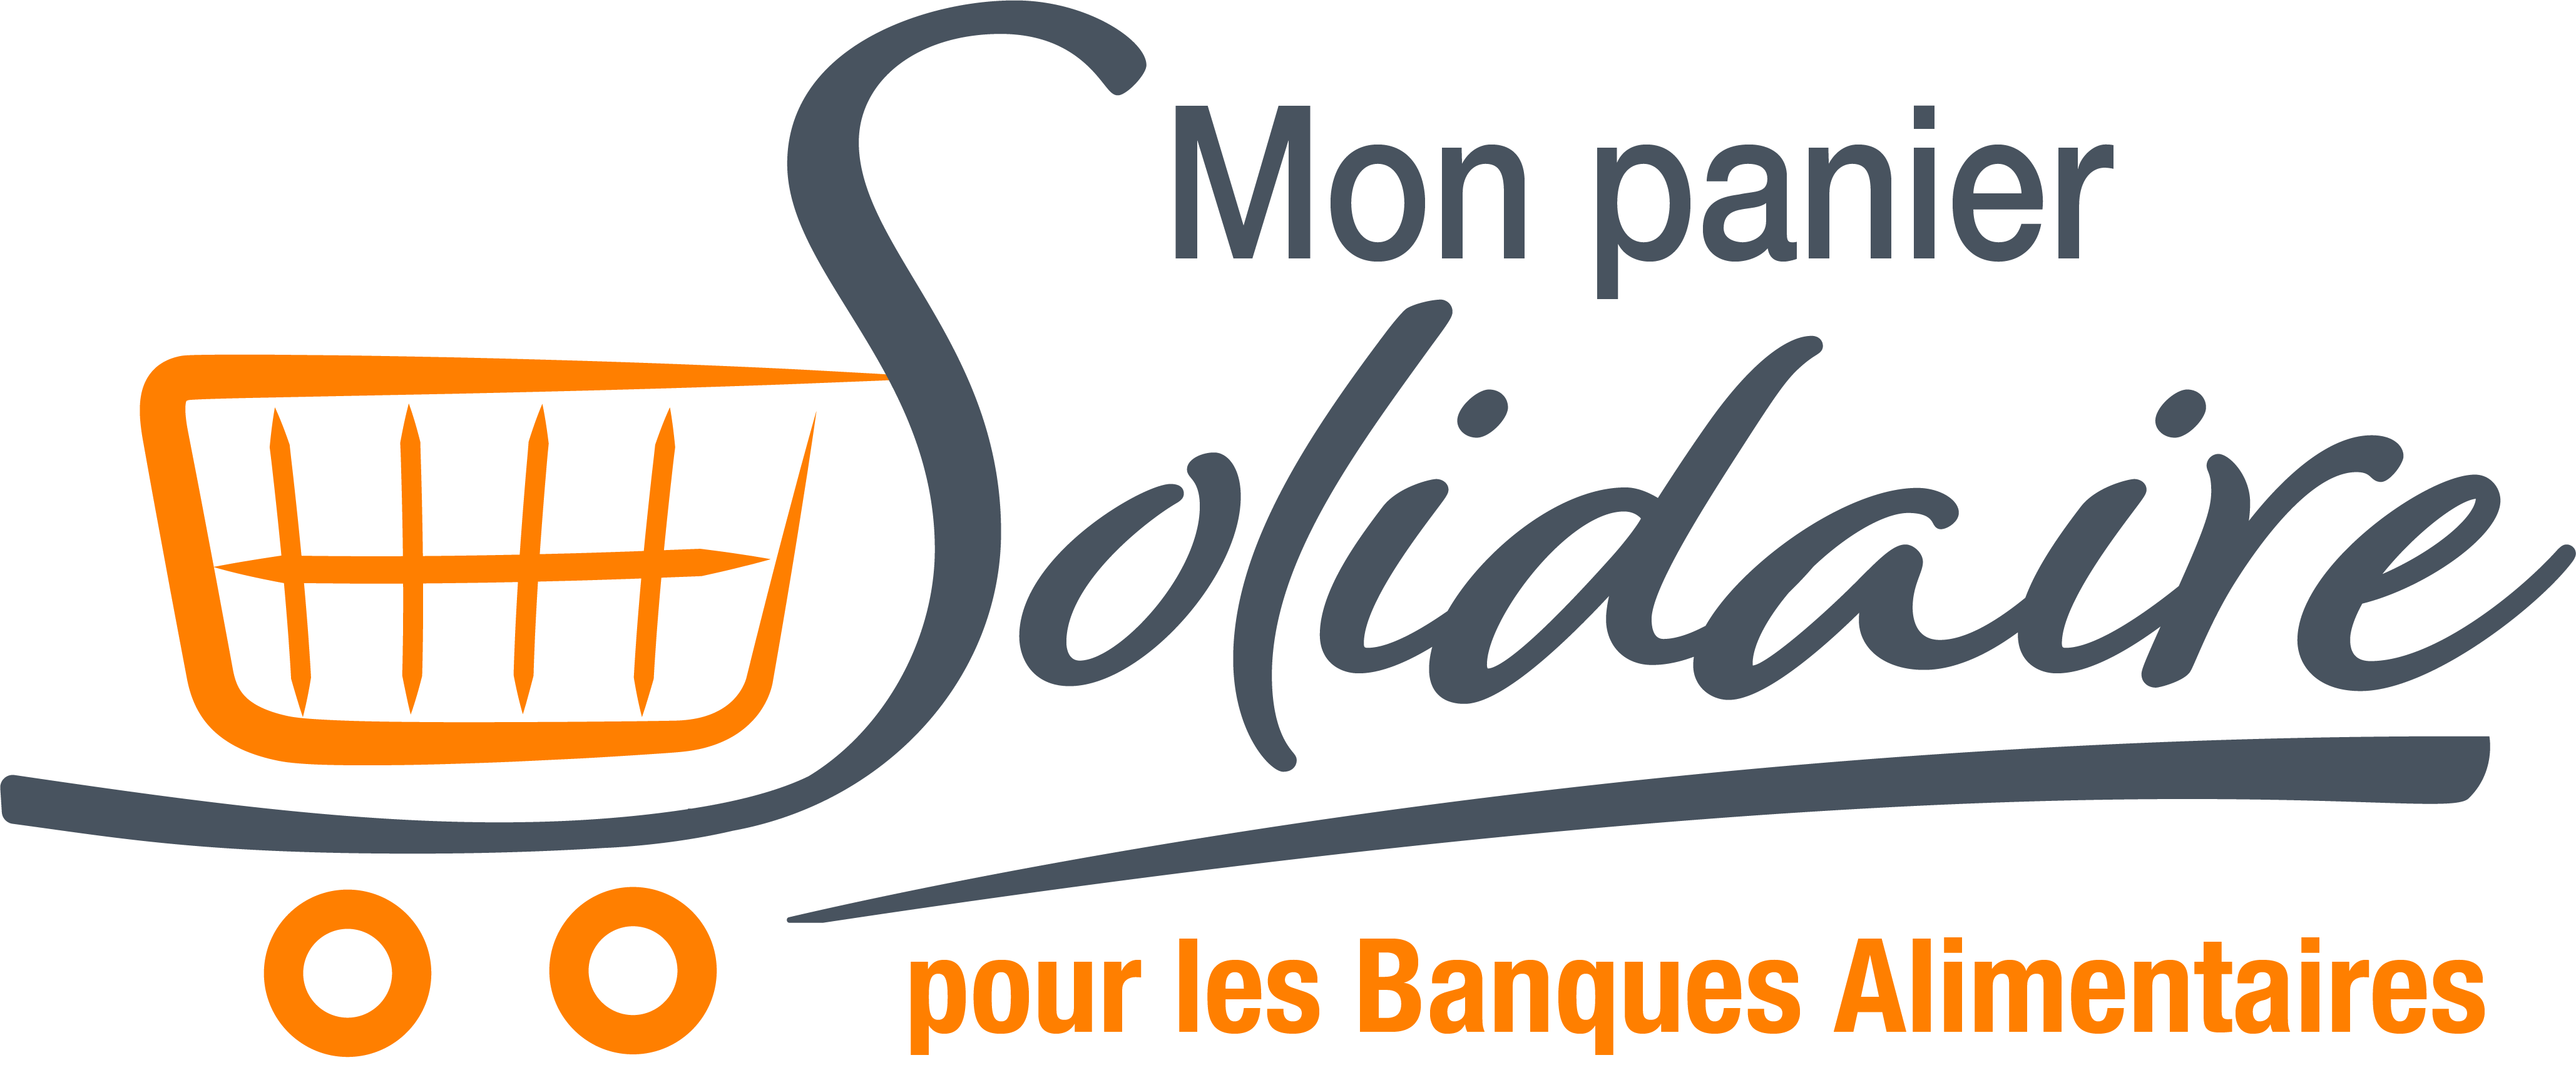 Logo mon panier solidaire 2022